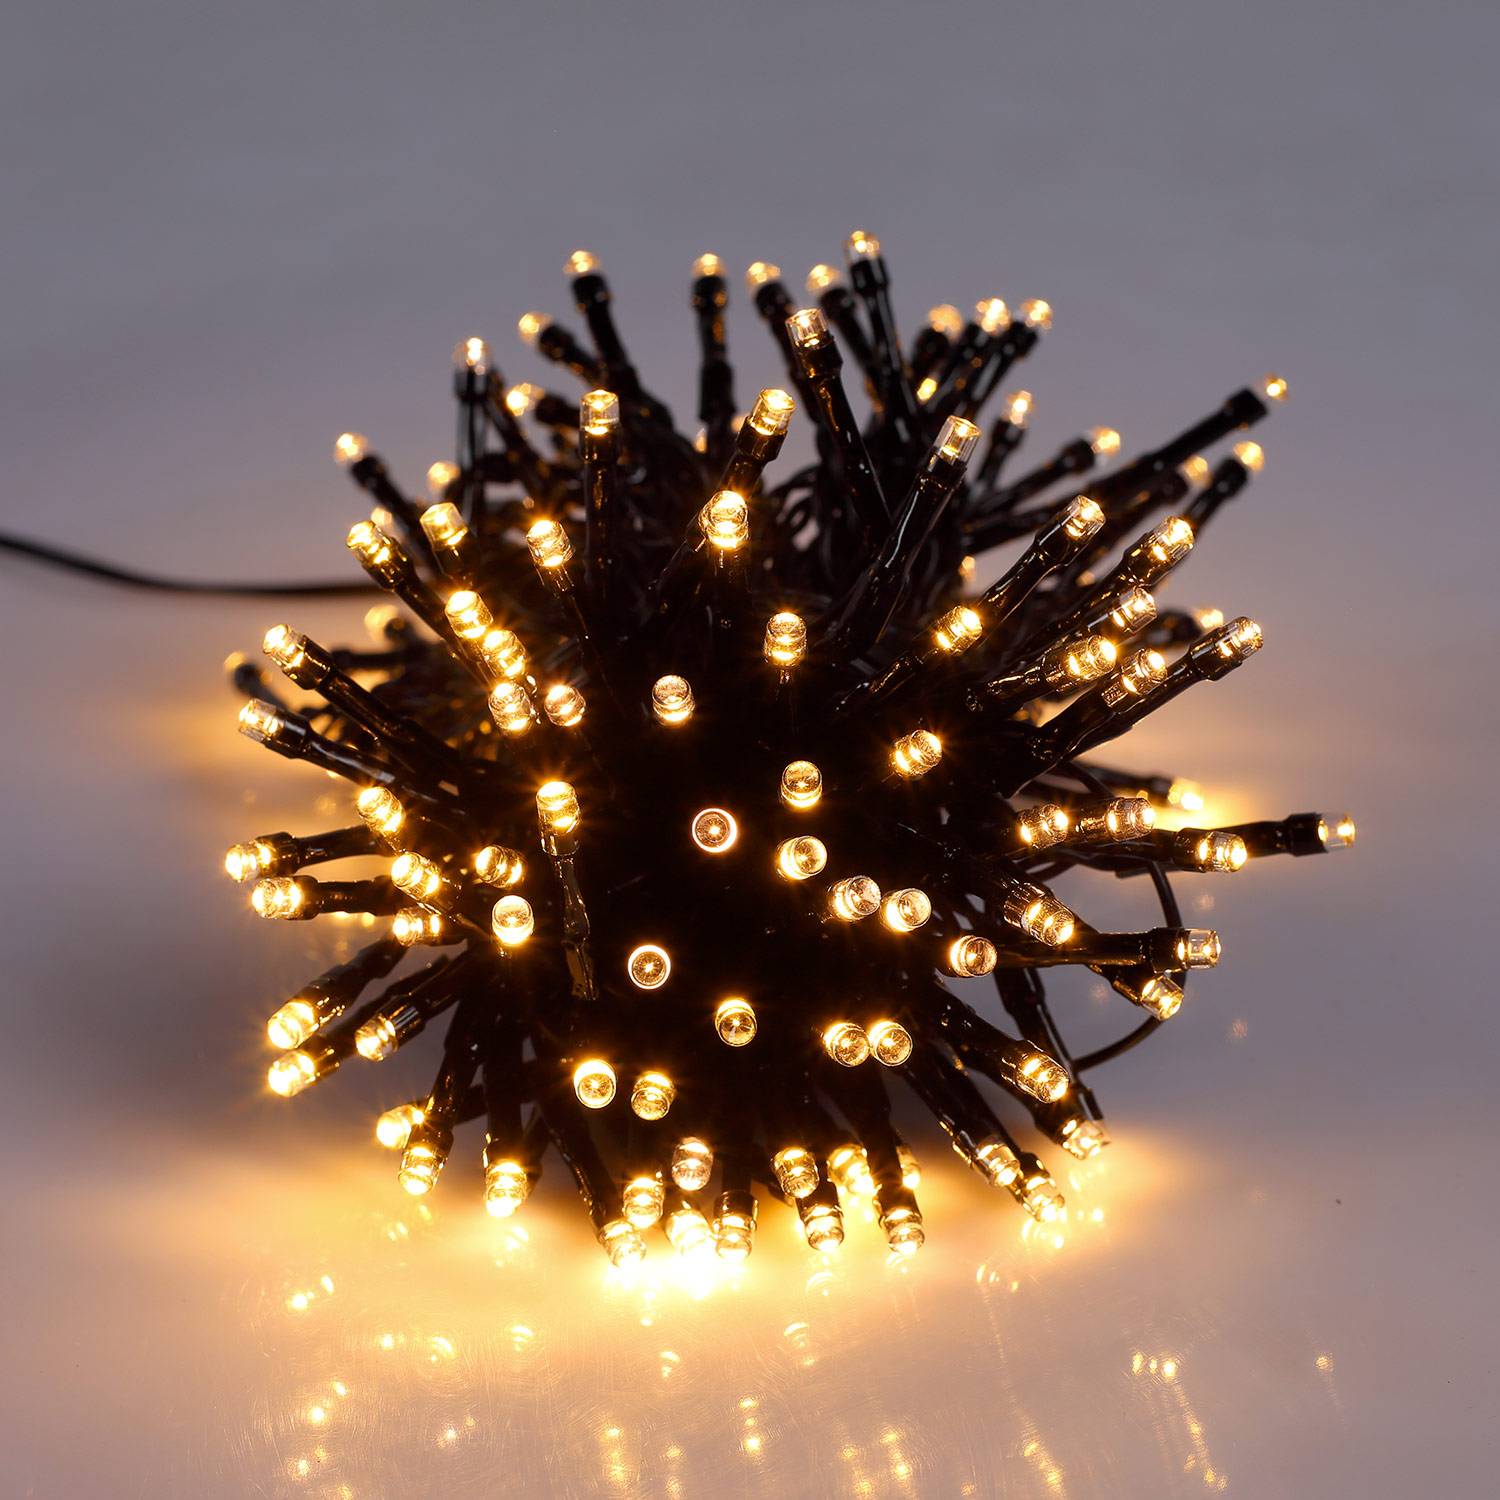 Guirlande lumineuse solaire extérieure Noël 15m de long, 150 LED blanc chaud, 8 modes Photo2